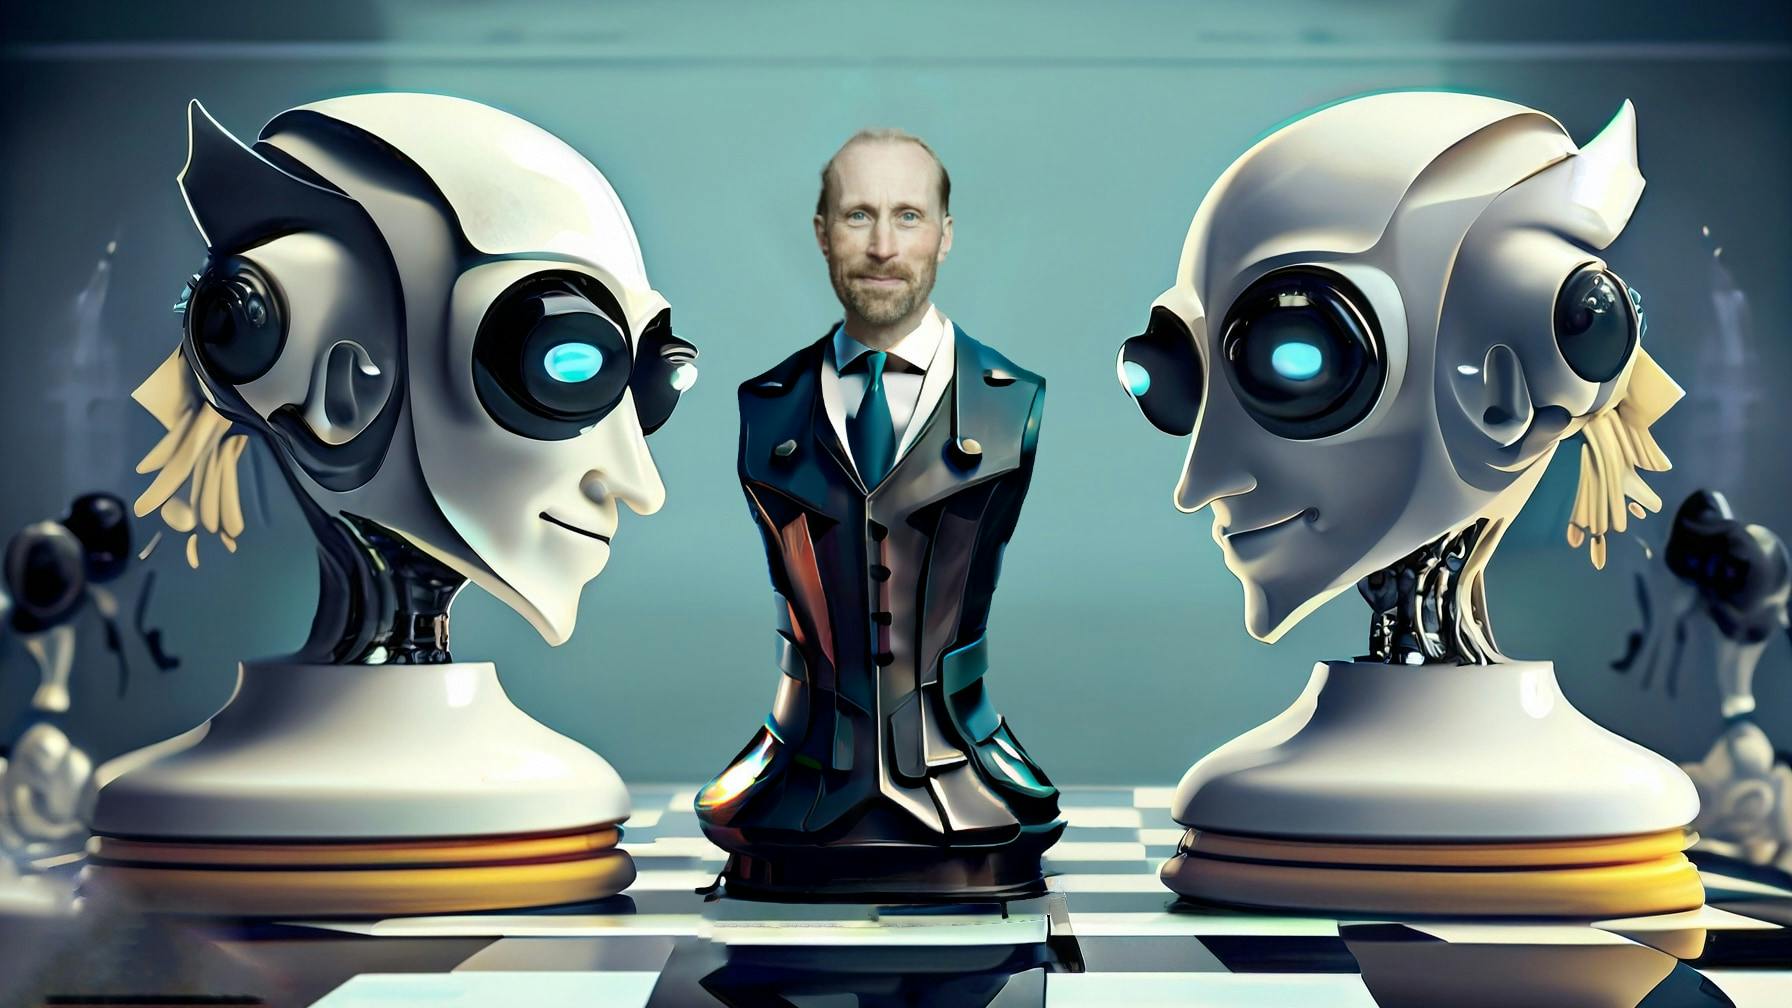 Erik Sprinchorn från TIN Fonder i en futuristisk bild inspirerad från schack och AI.